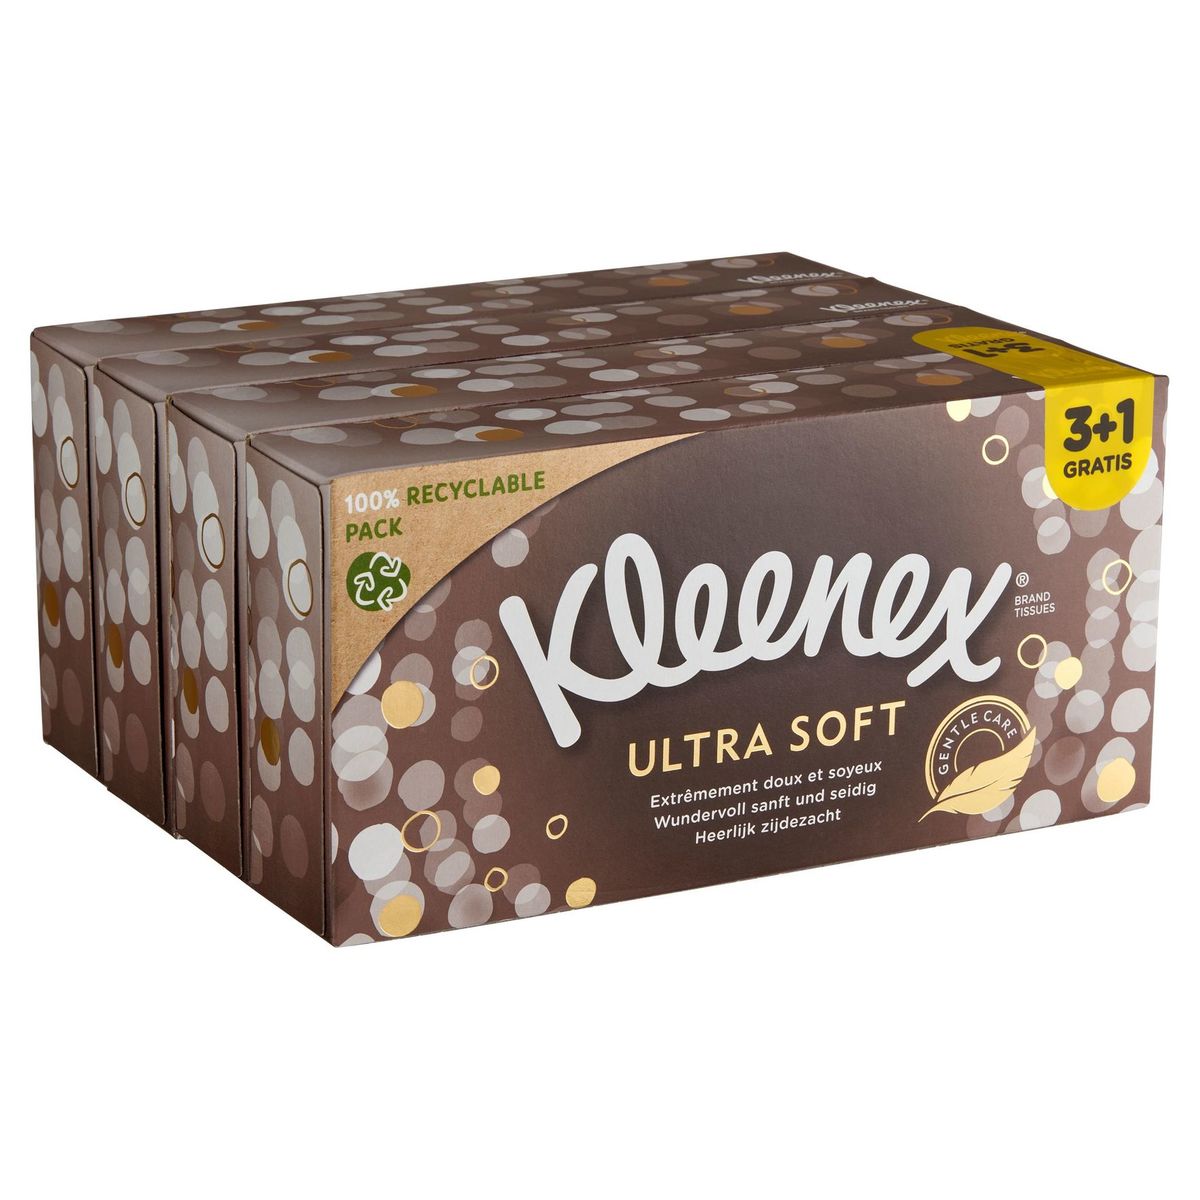 Kleenex Ultra Soft 3-Épaisseurs 3+1 Gratis 4 x 64 Pièces